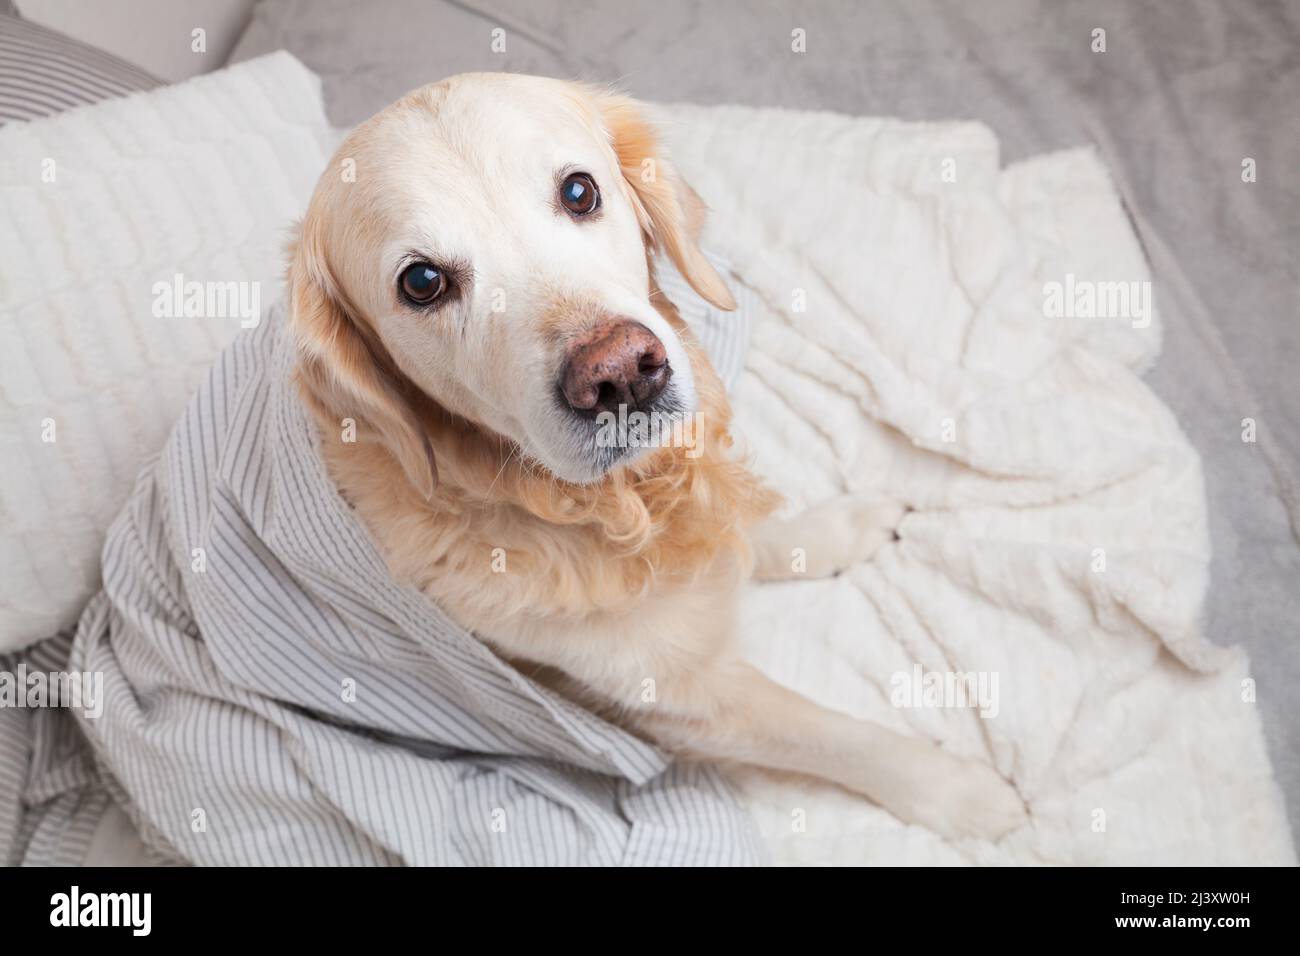 Golden Retriever Hund unter hellgrau und weiß gestreiften karierten Karabinisch in modernen Schlafzimmer. Bei kaltem Winterwetter wärmt sich das Tier unter der Decke. Haustiere erlaubt Stockfoto